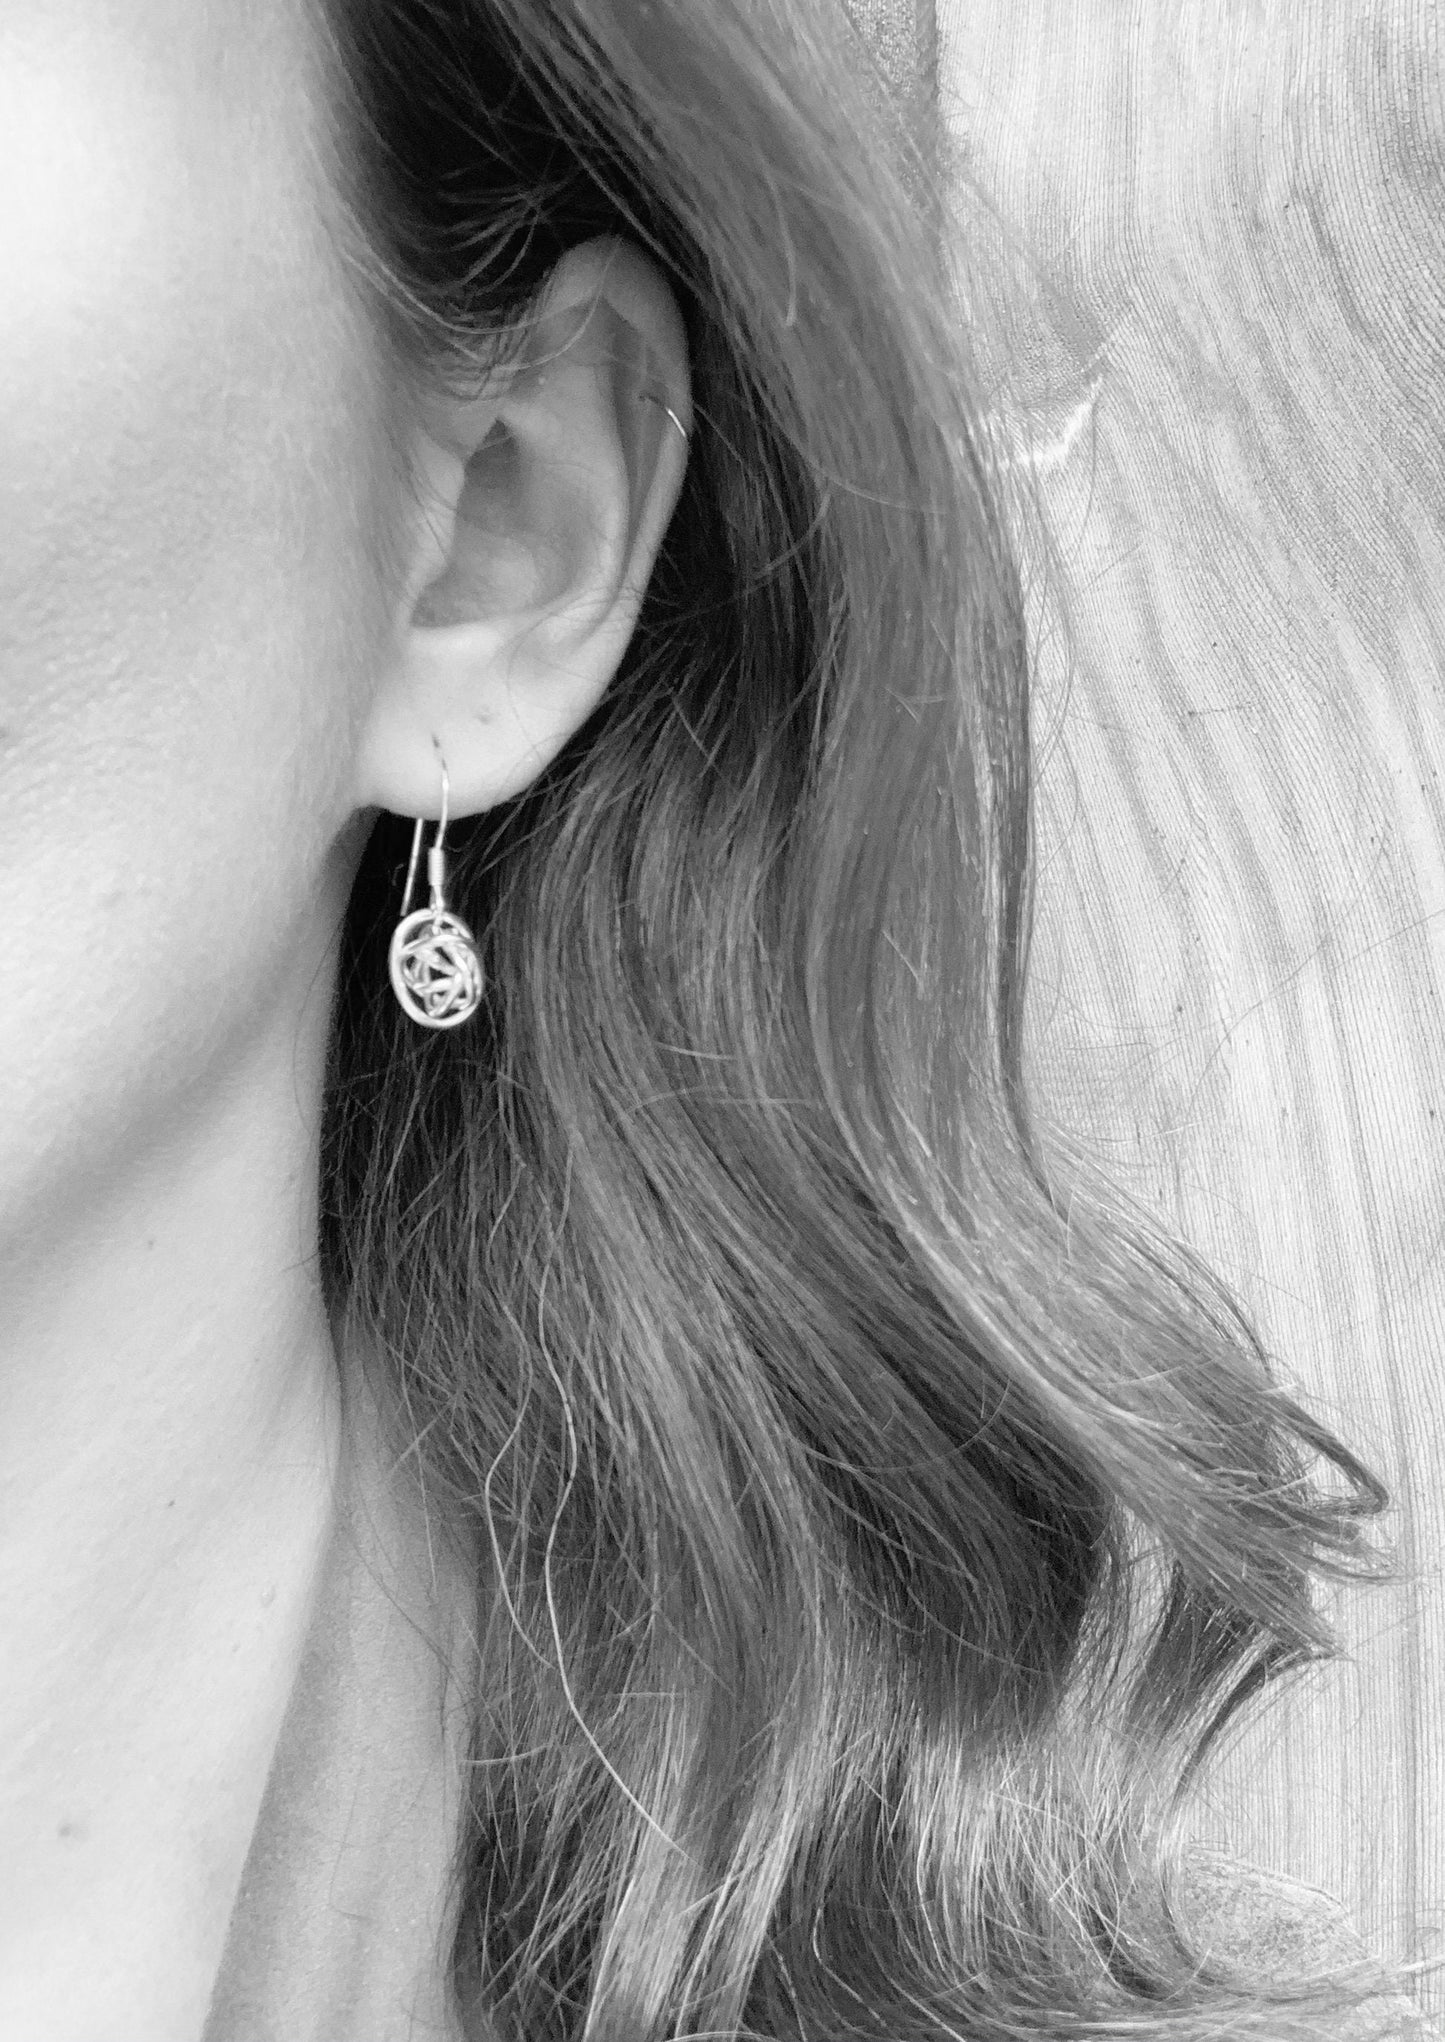 Sterling silver knot earrings